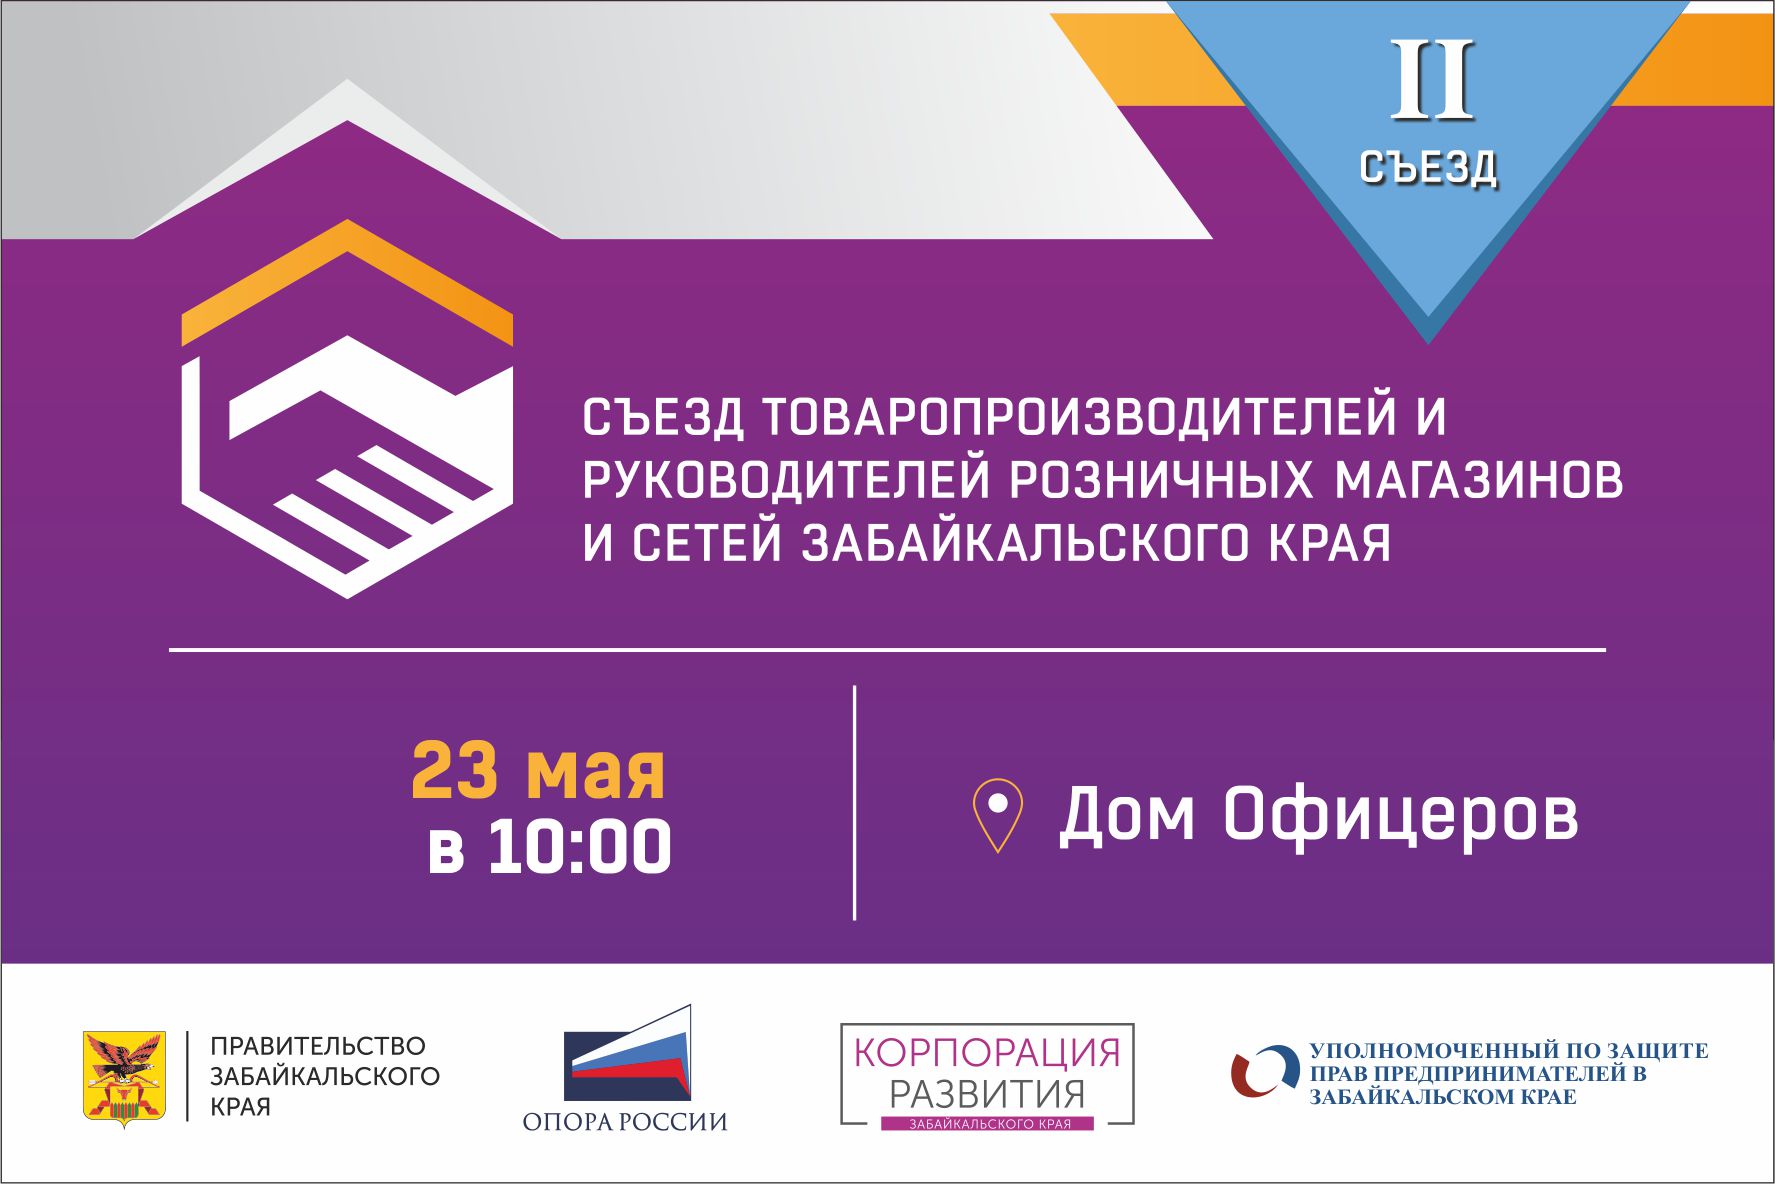 II съезд товаропроизводителей и руководителей розничных магазинов и сетей Забайкальского края состоится в Чите